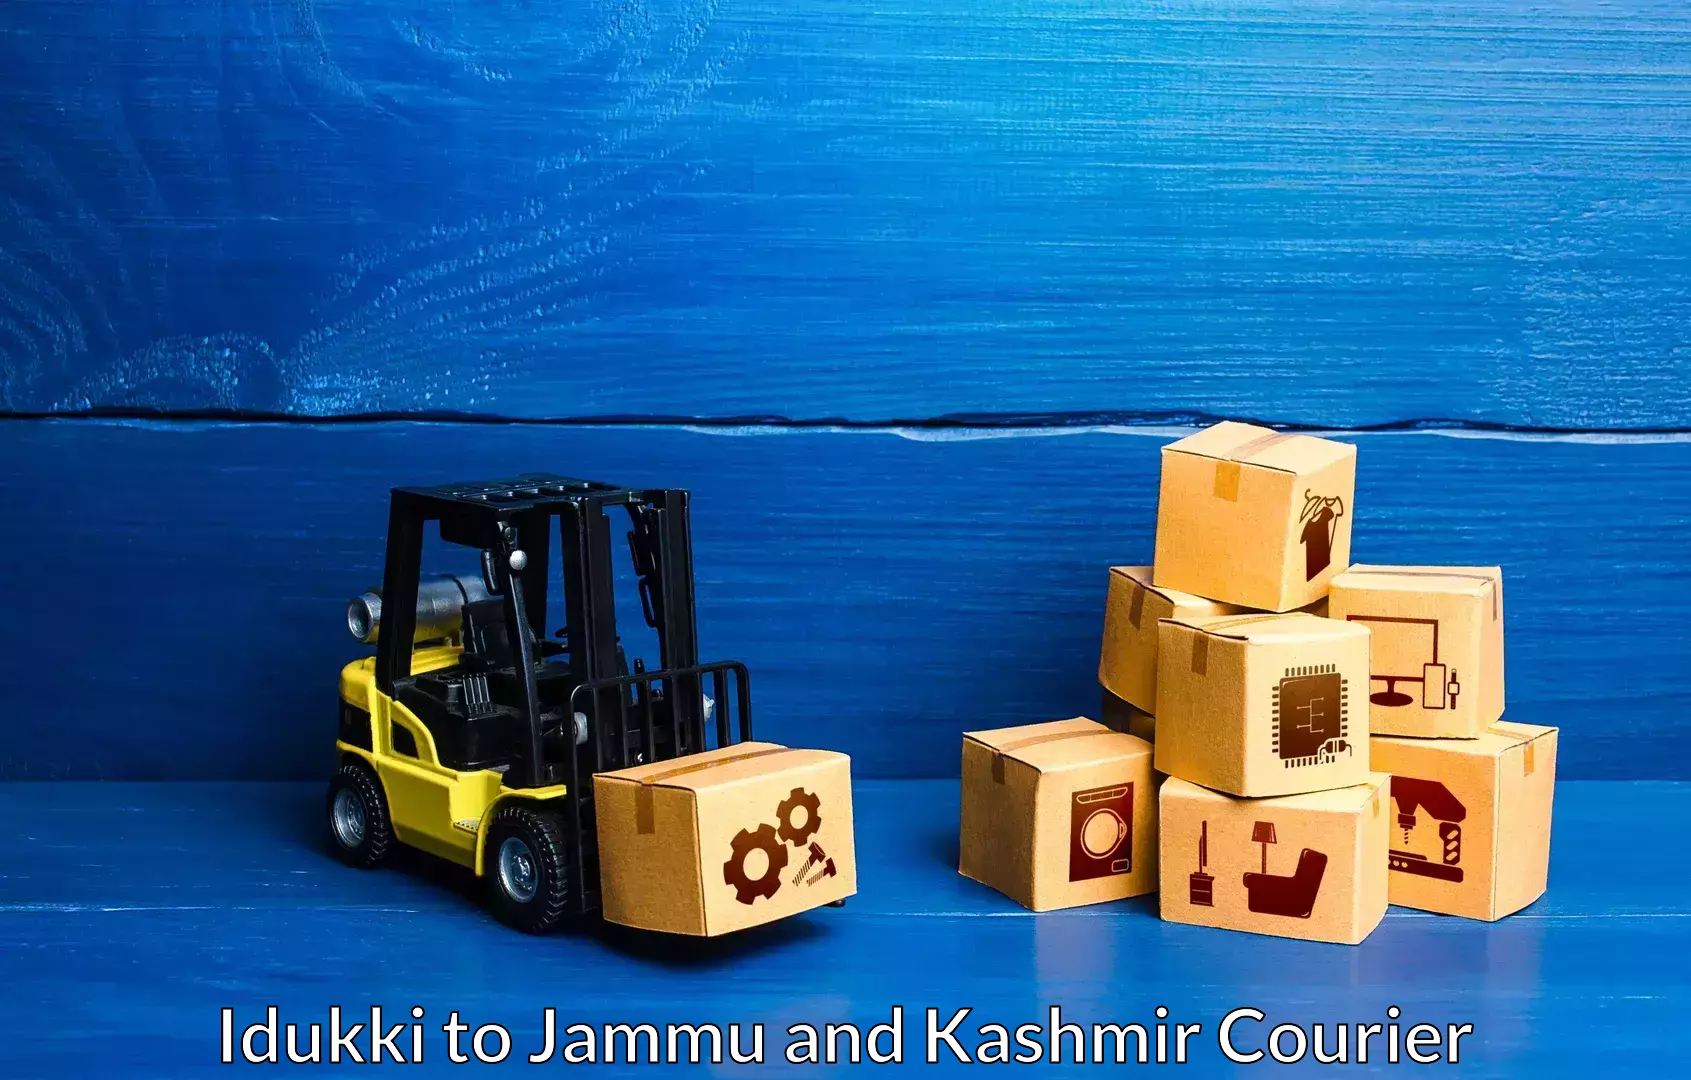 Furniture transport experts Idukki to Jammu and Kashmir